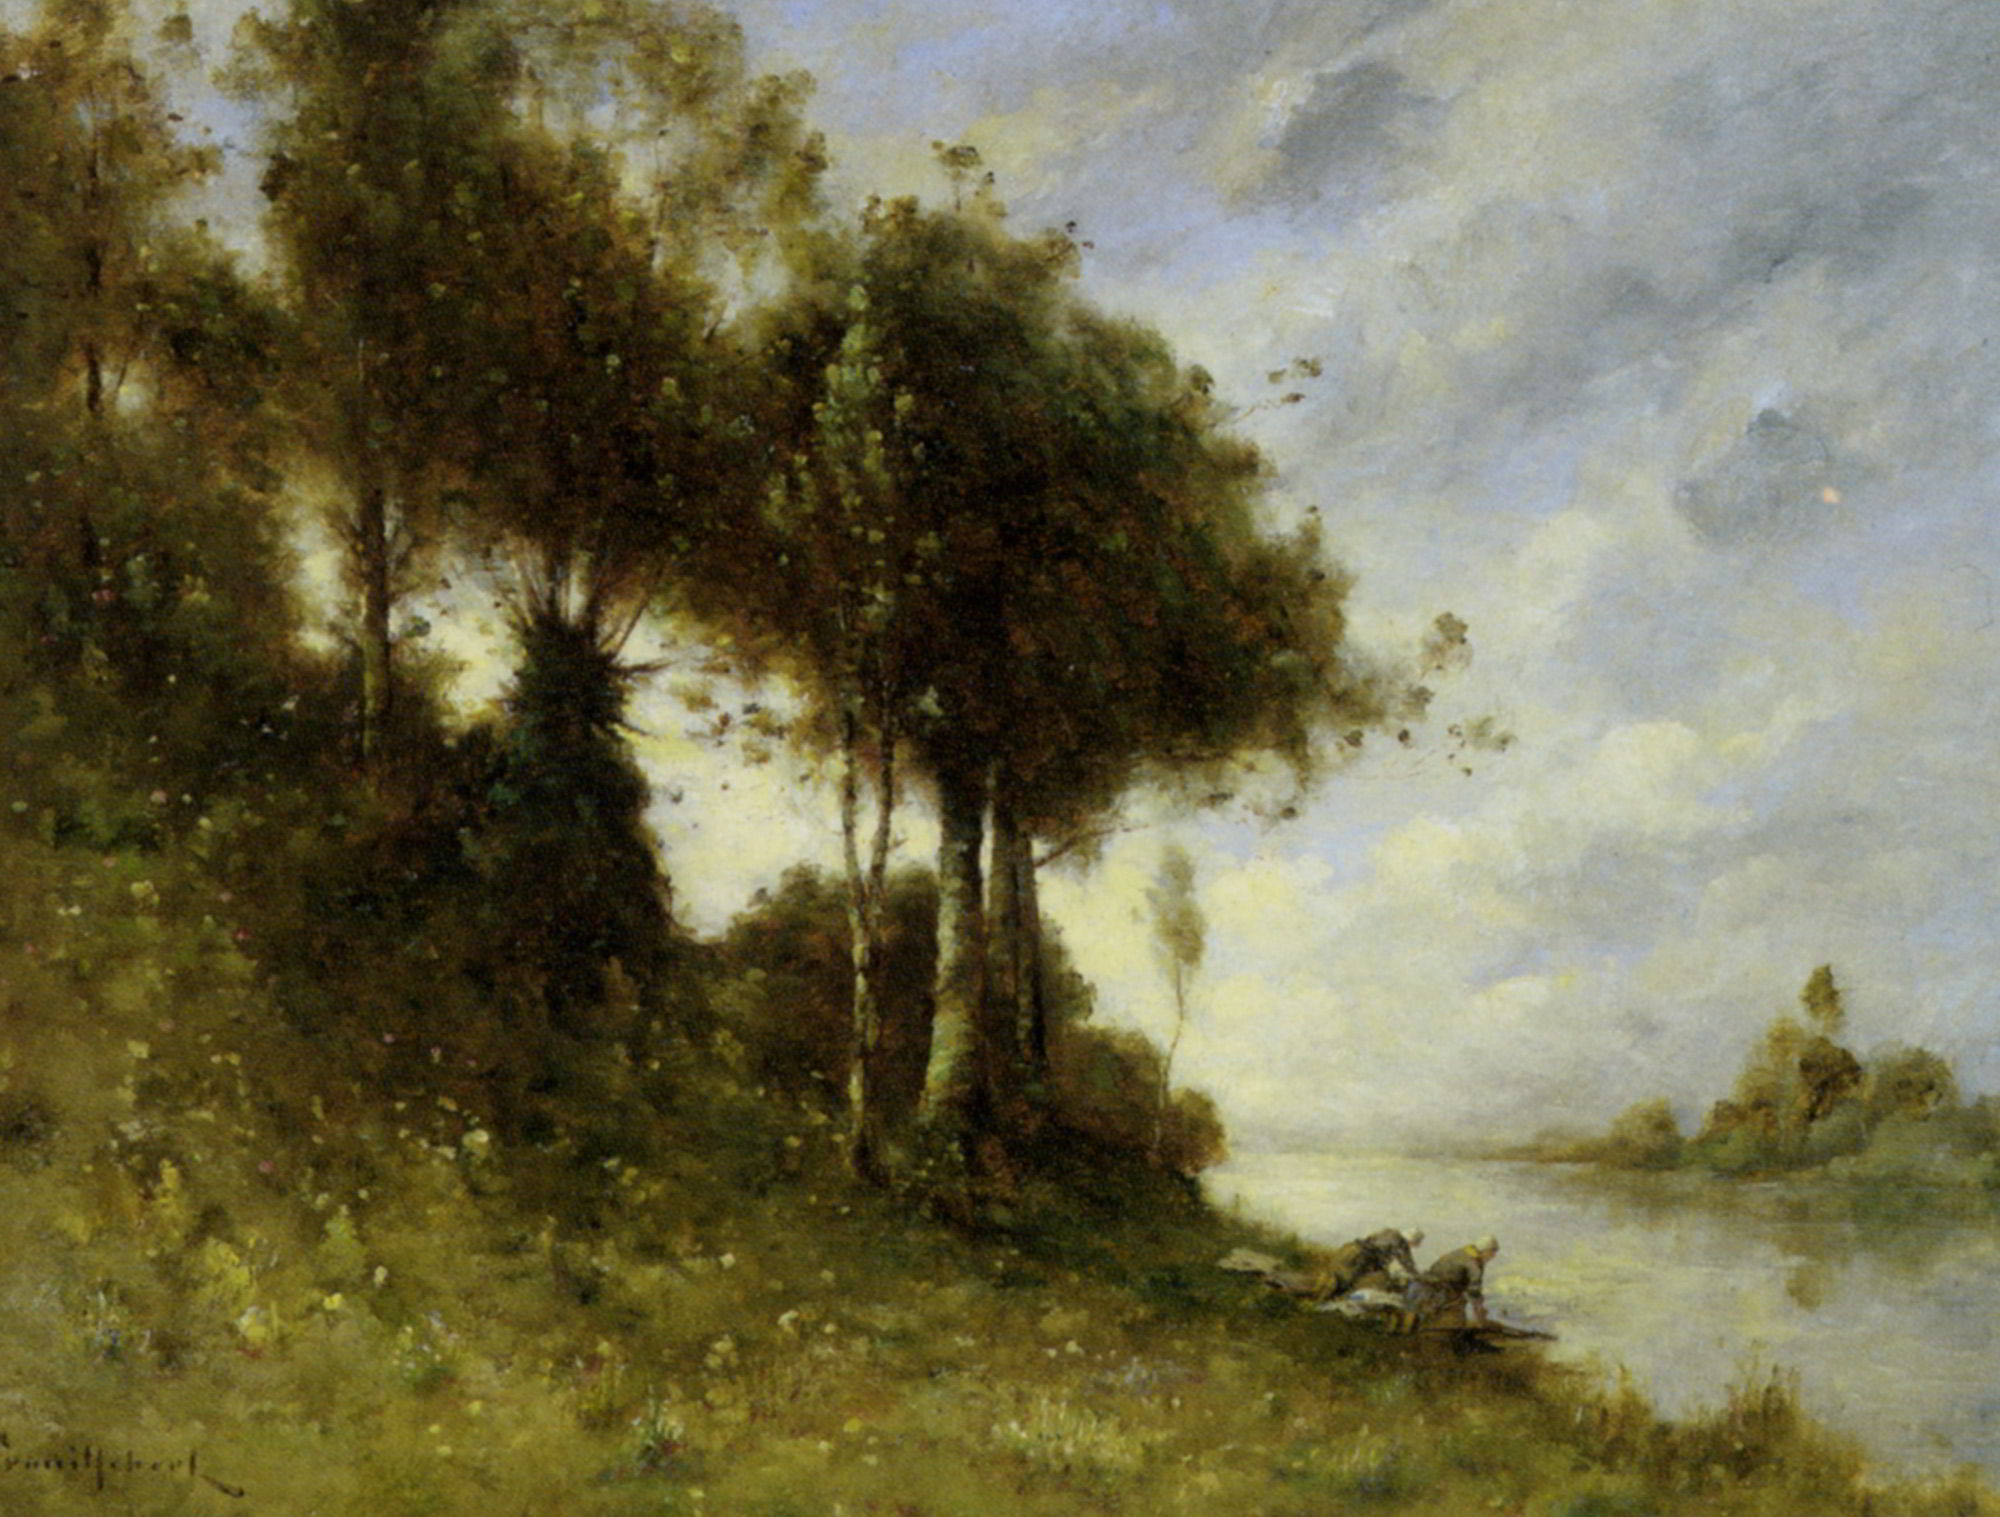 Laveuses au bord de la riviere by Paul Desire Trouillebert-French Painting